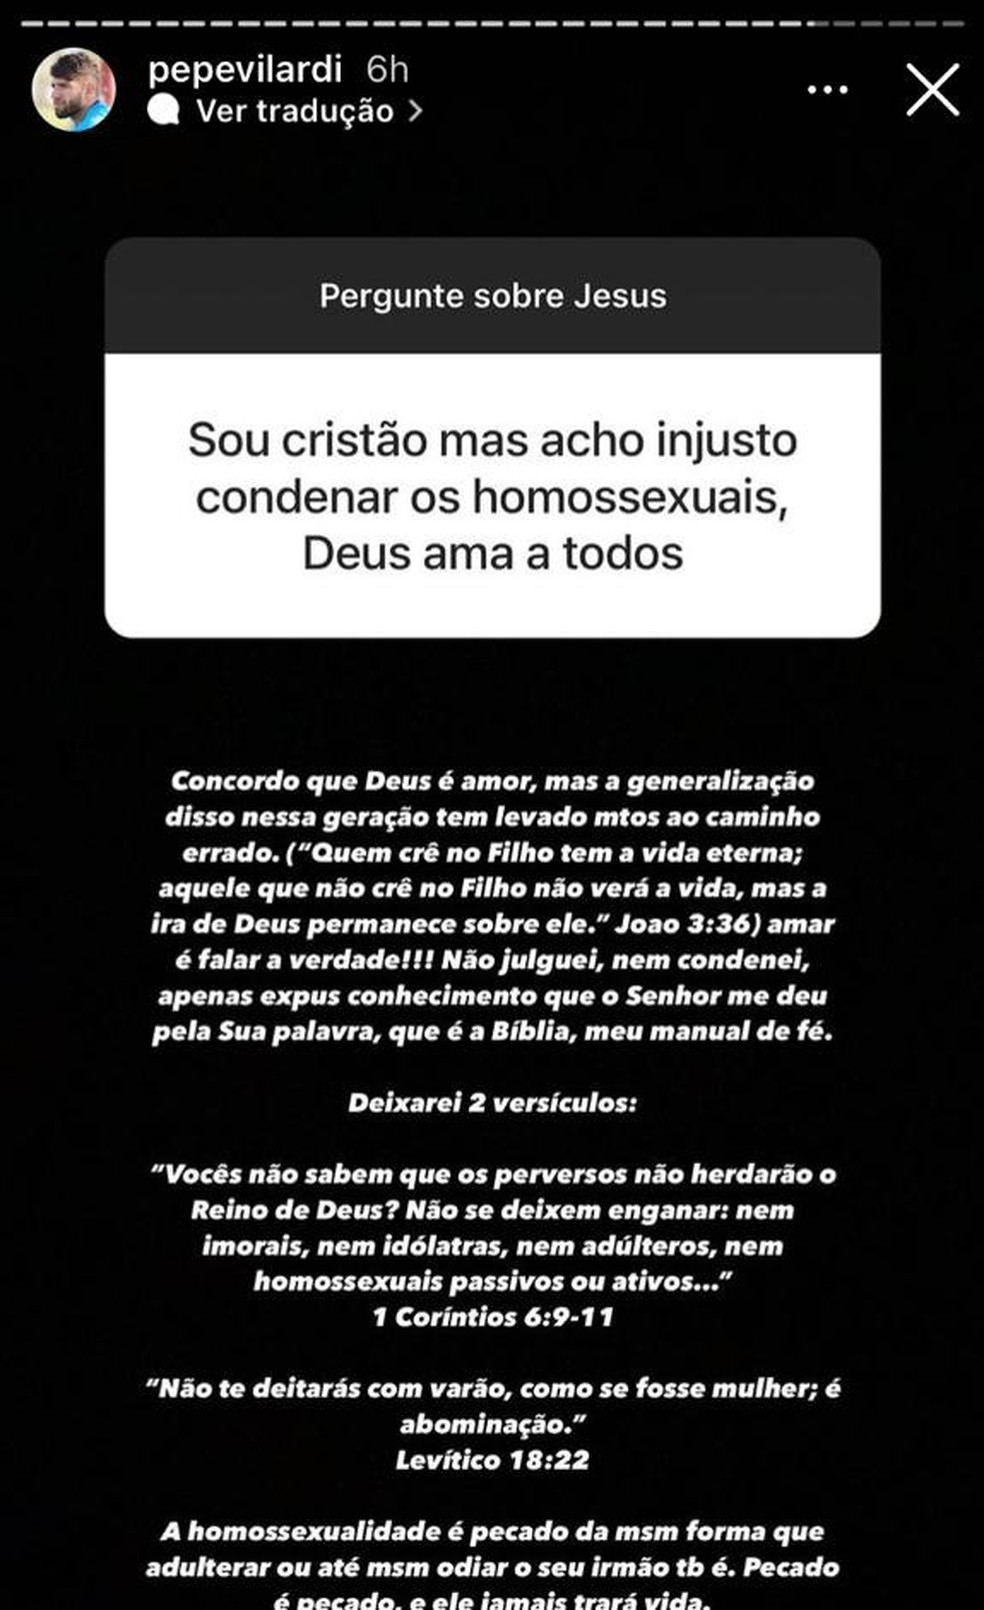 Cuiabá: Pepê diz que homossexualidade 'é pecado' e 'leva à condenação